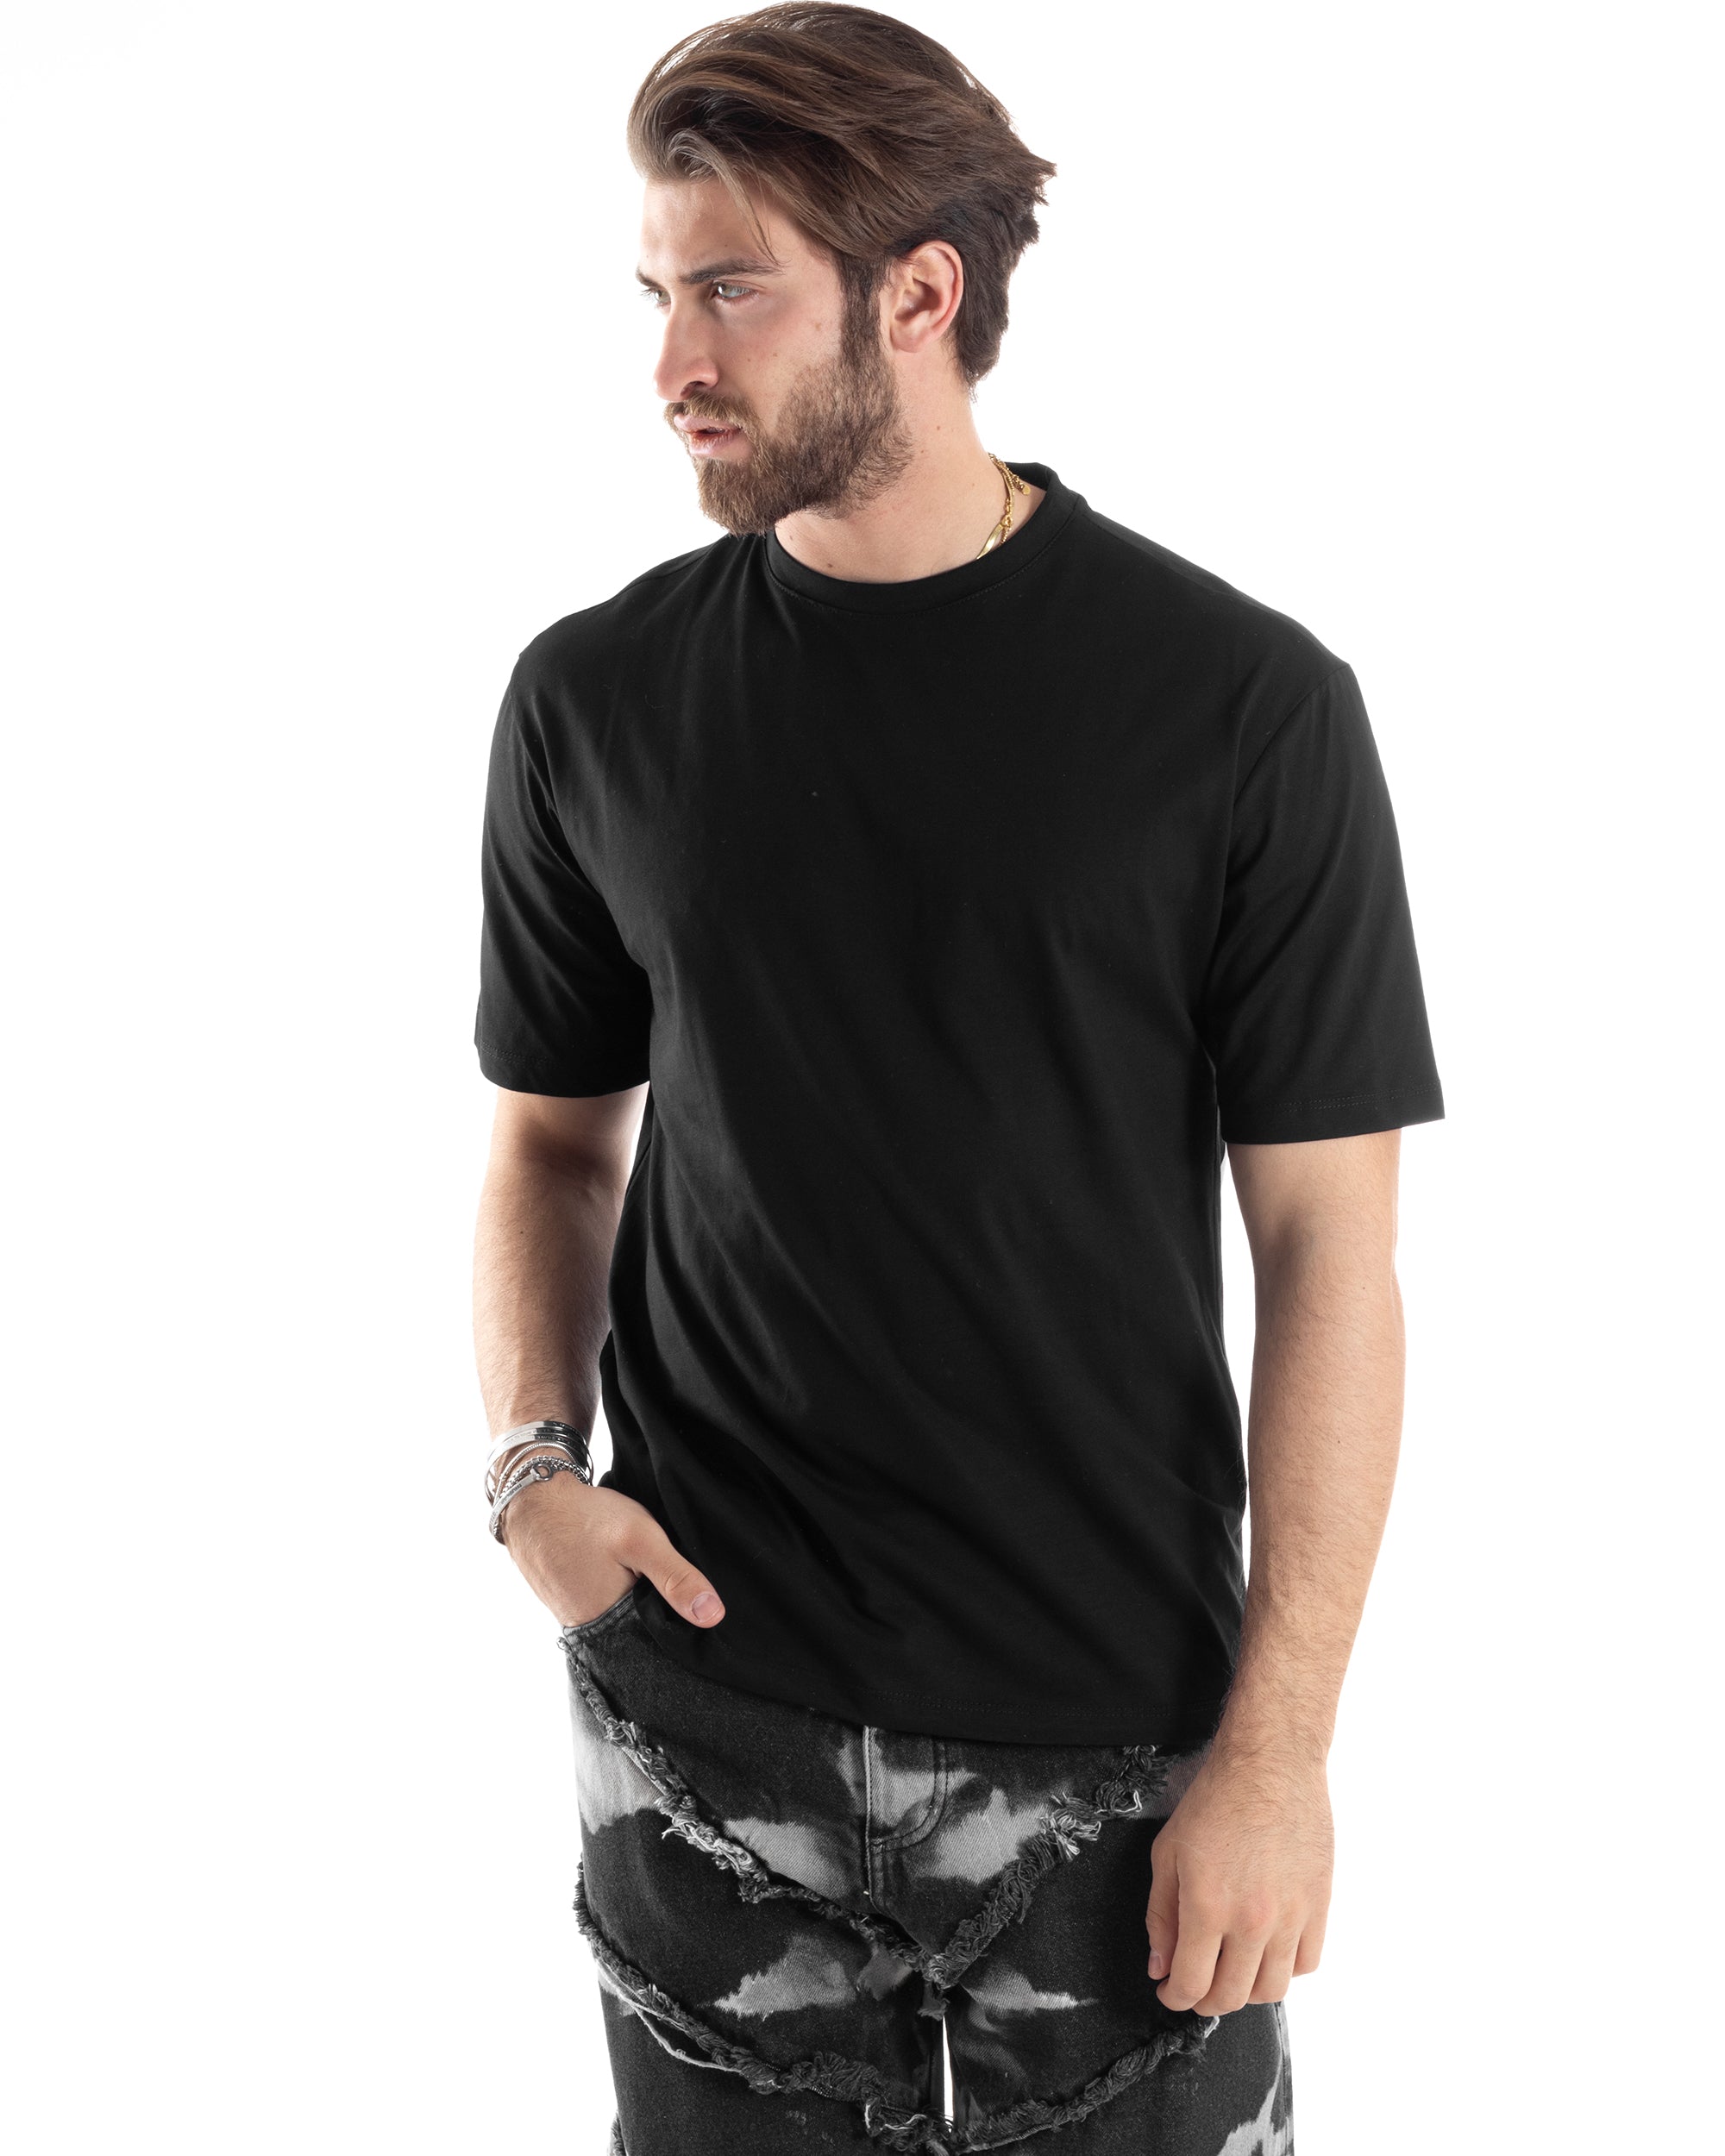 T-Shirt Uomo Con Stampa Maglia Manica Corta Girocollo Cotone Nero GIOSAL-TS3032A